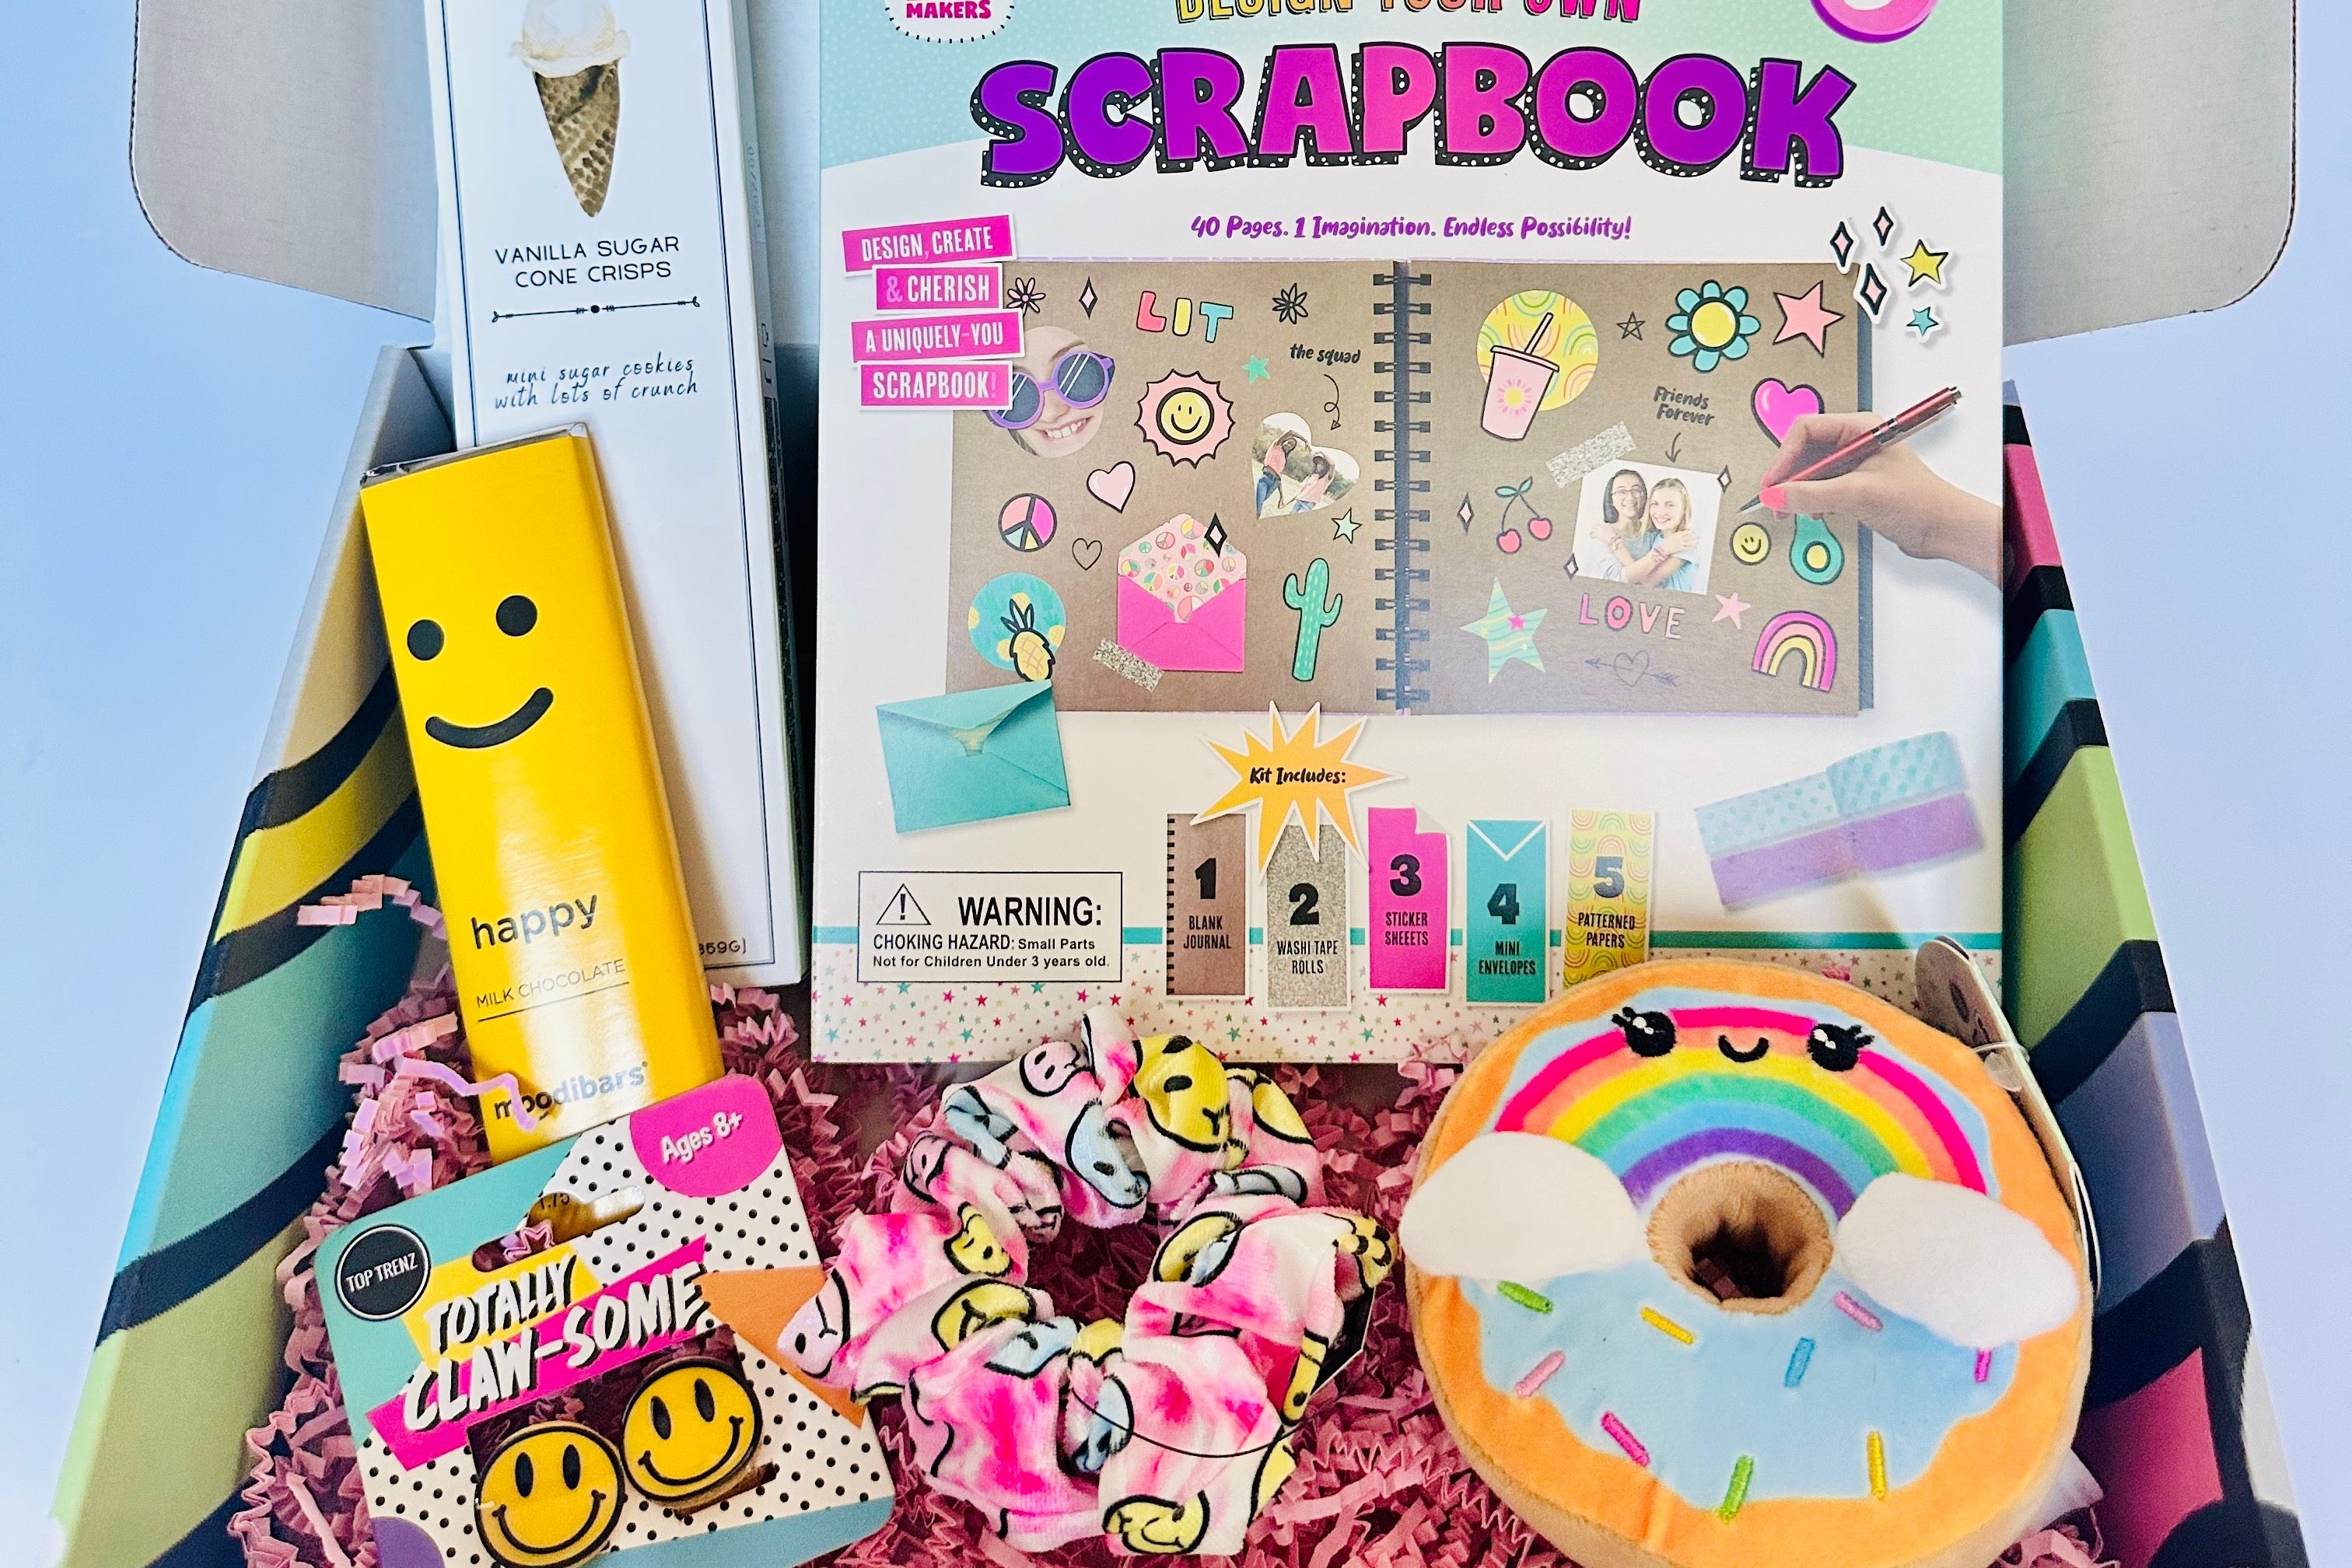 Scrapbooking Store  Scrapbook Supplies Delivered Monthly - Cratejoy